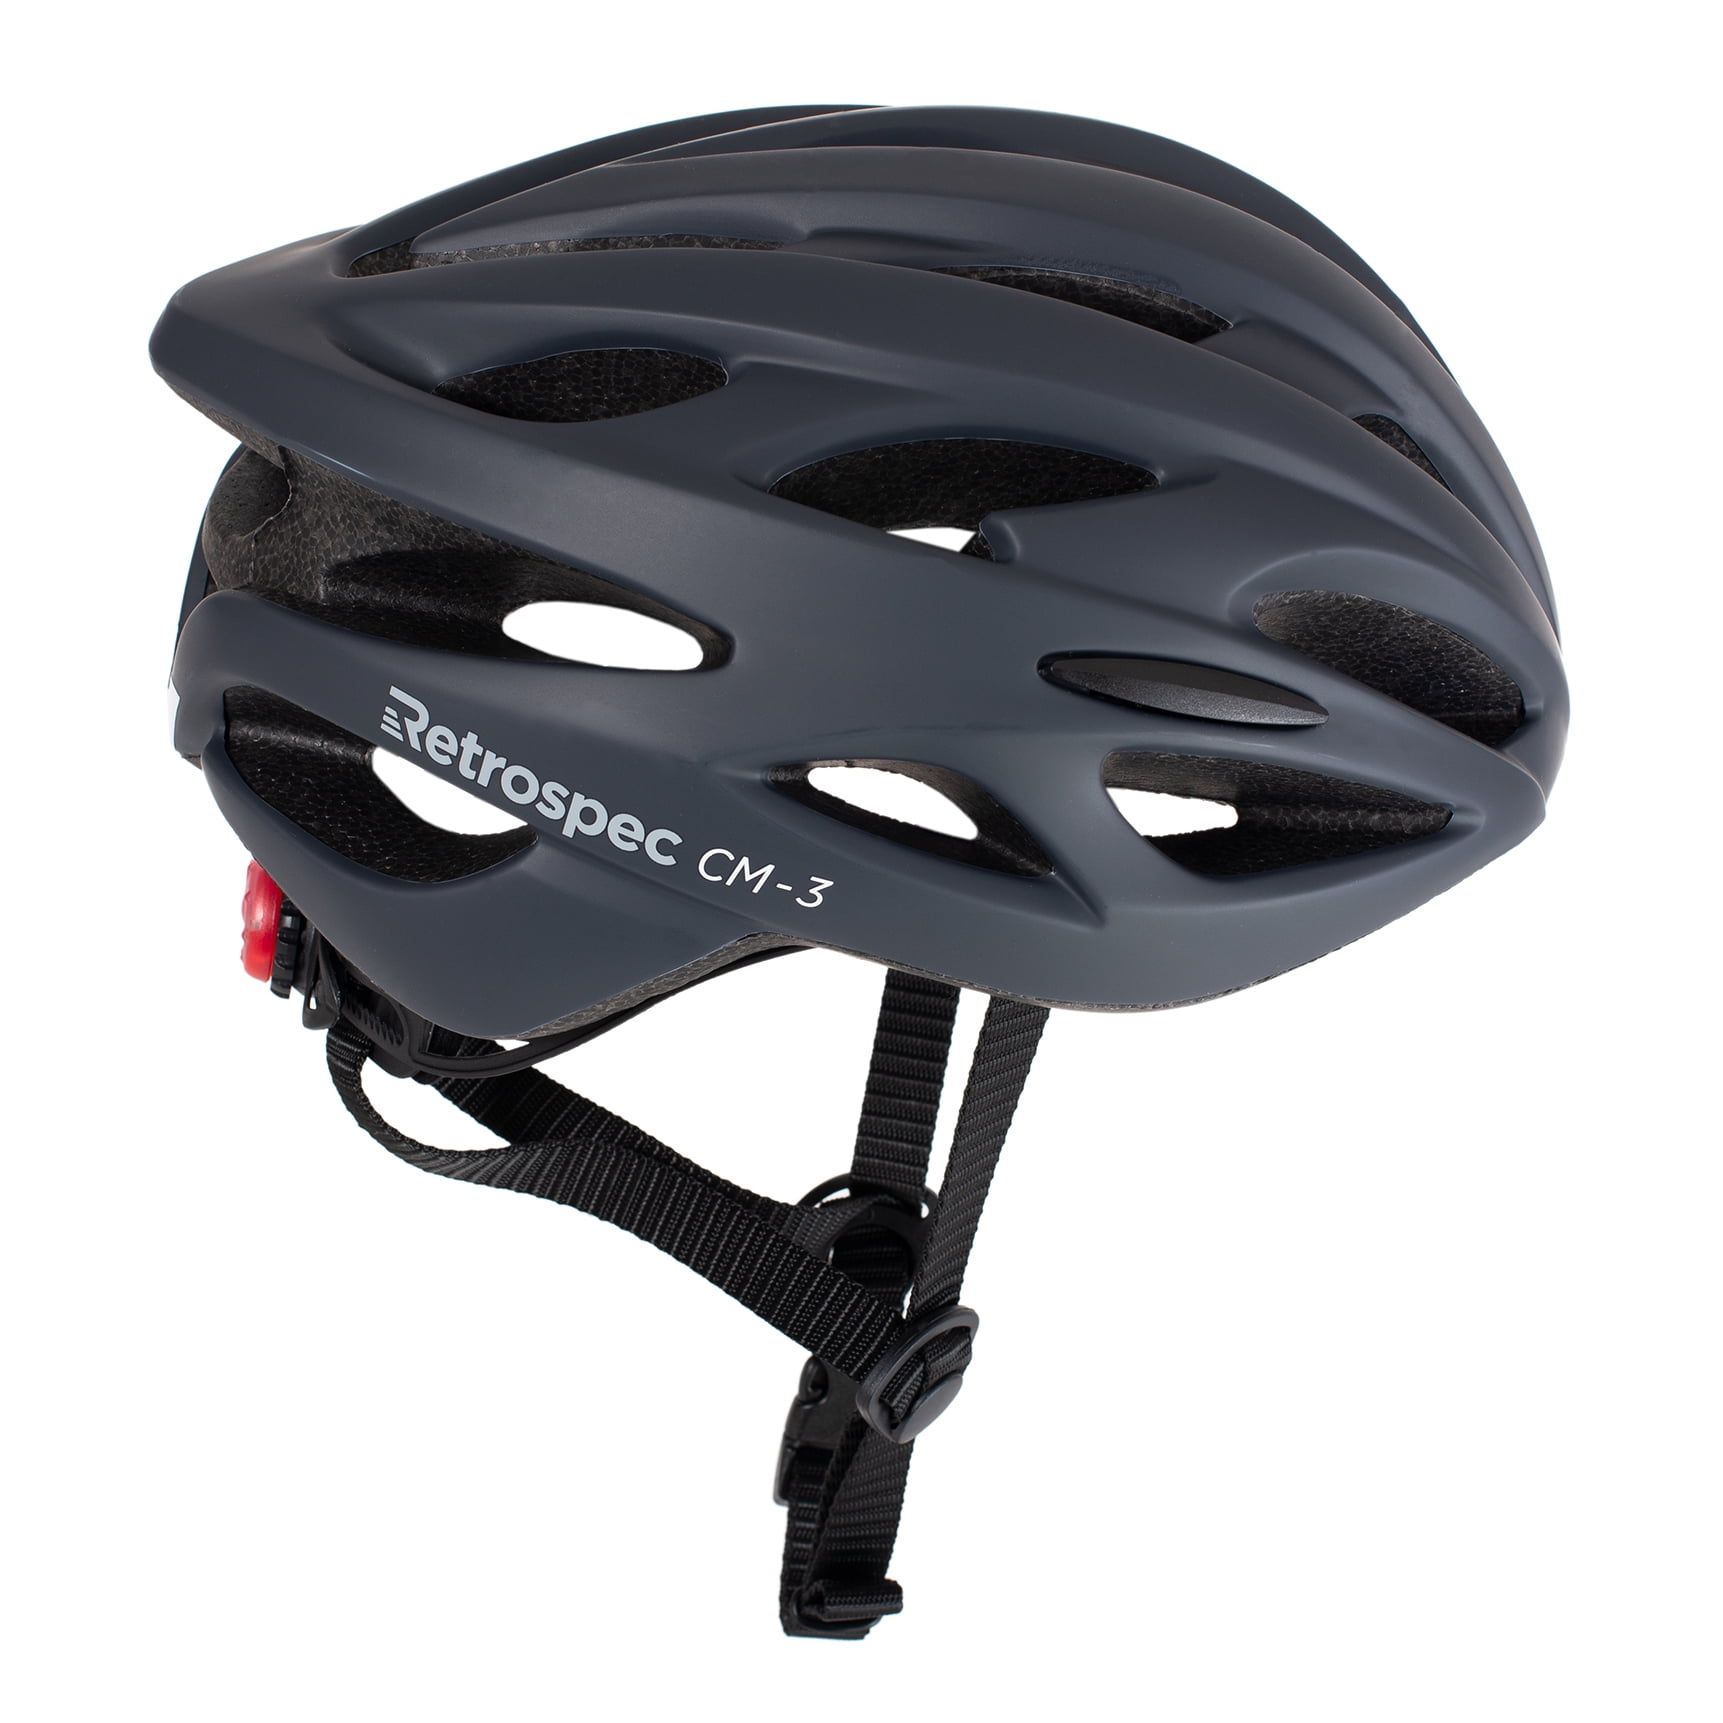 Retrospec CM-3 Bike Helmet with LED Safety Light Adjustable Dial and 24 vents